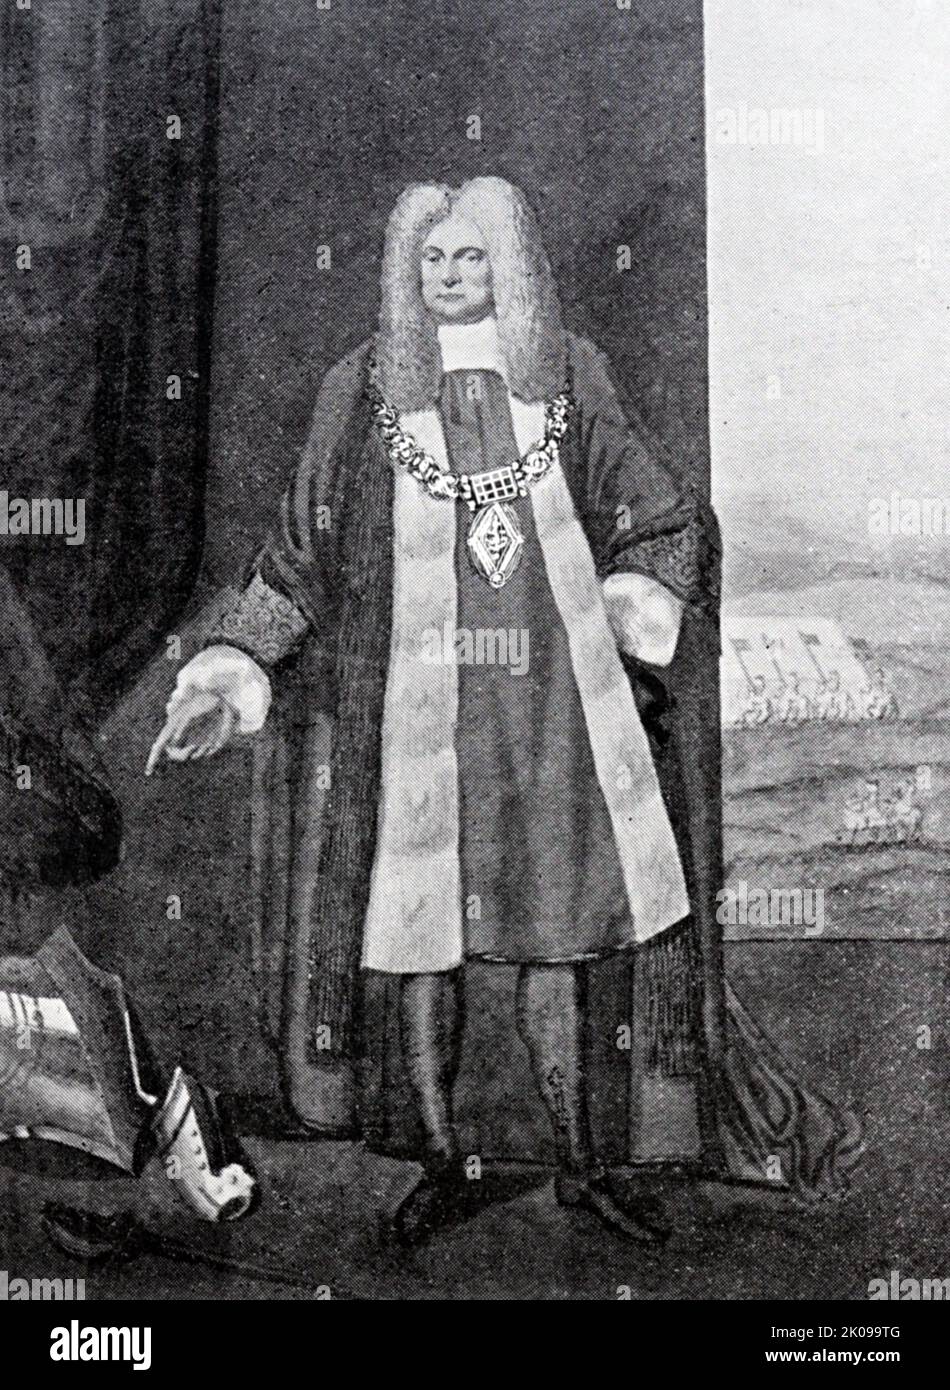 Sir William Pritchard (1632-1705) war ein englischer Kaufmann und Politiker, 1682 Oberbürgermeister von London. Aus einem Aquarell. Stockfoto